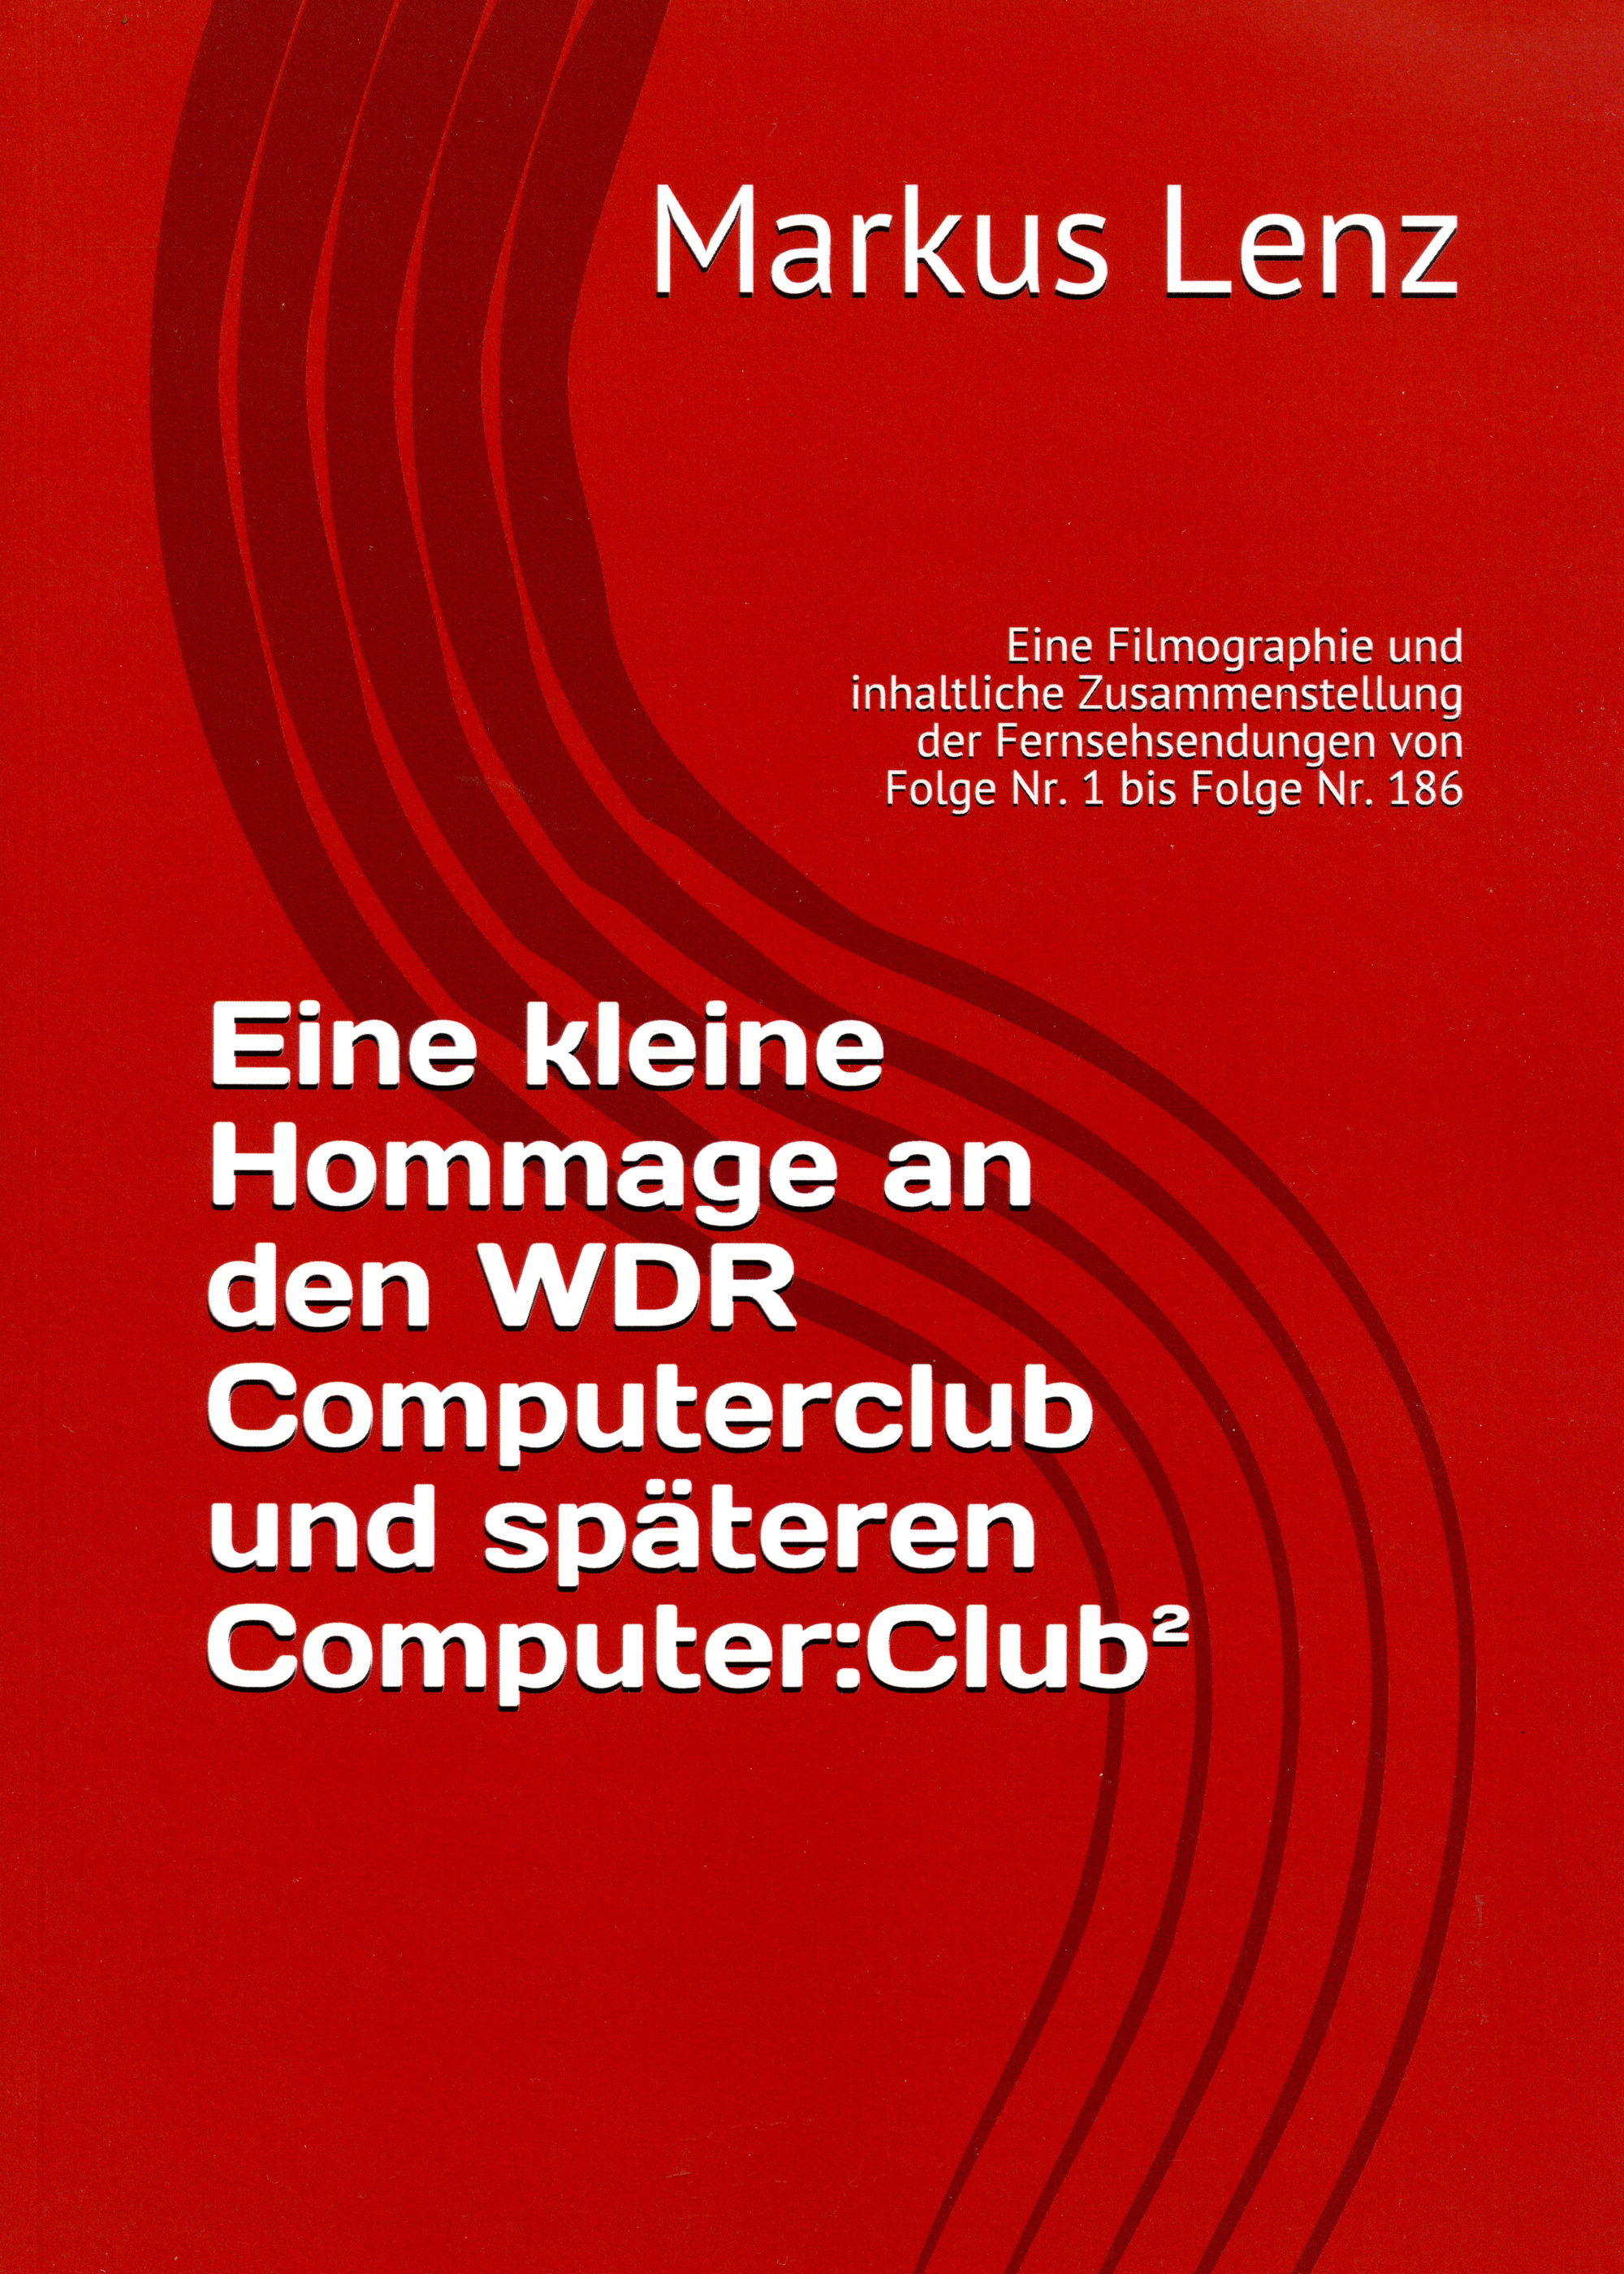 Eine kleine Hommage an den WDR Computerclub und spteren Computer:Club: Eine Filmographie und inhaltliche Zusammenstellung der Fernsehsendungen von Folge Nr. 1 bis Folge Nr. 186